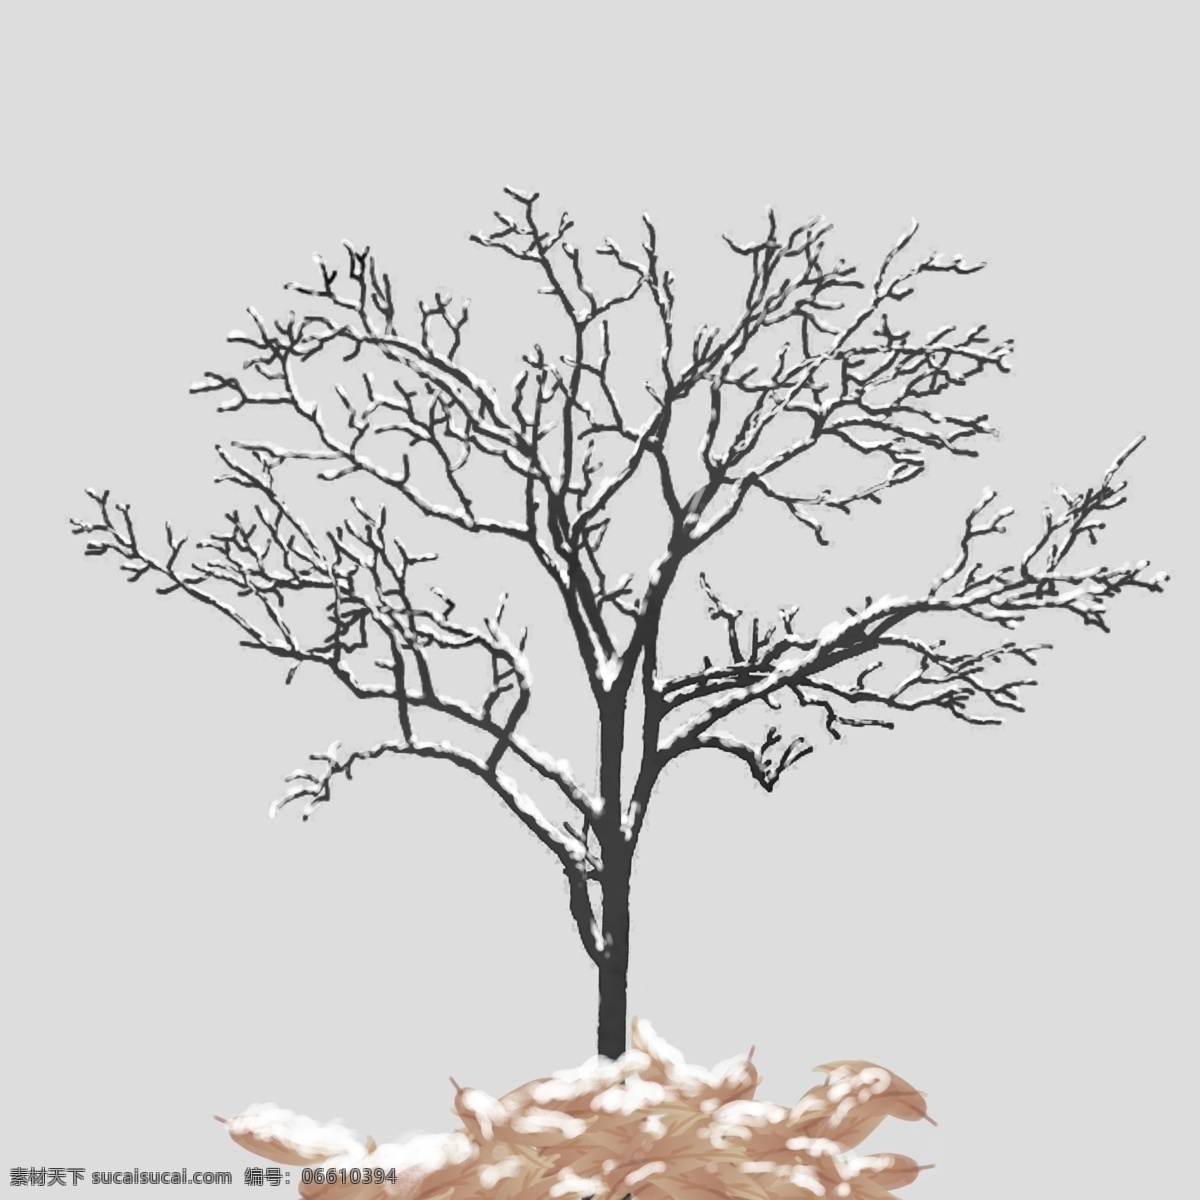 冬季 积雪 暗色 树 落叶 寒冷 手绘 免 抠 积雪树 暗色树 免抠图 写实 唯美 冬季树 单棵树 堆积落叶